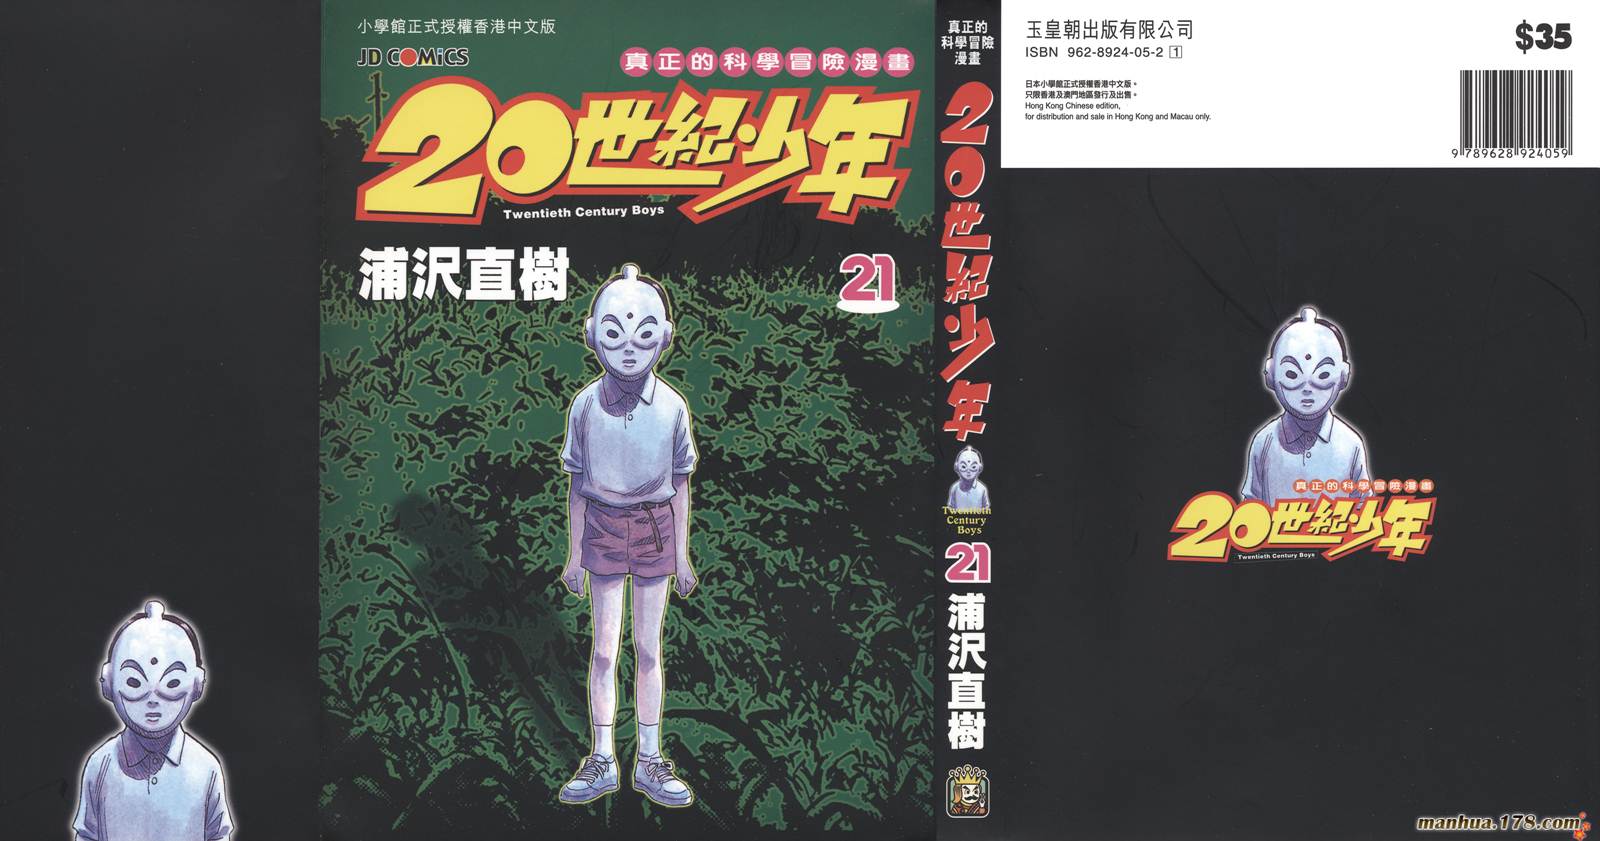 20世紀少年【第21卷】 漫畫線上看- 動漫戲說(ACGN.cc)